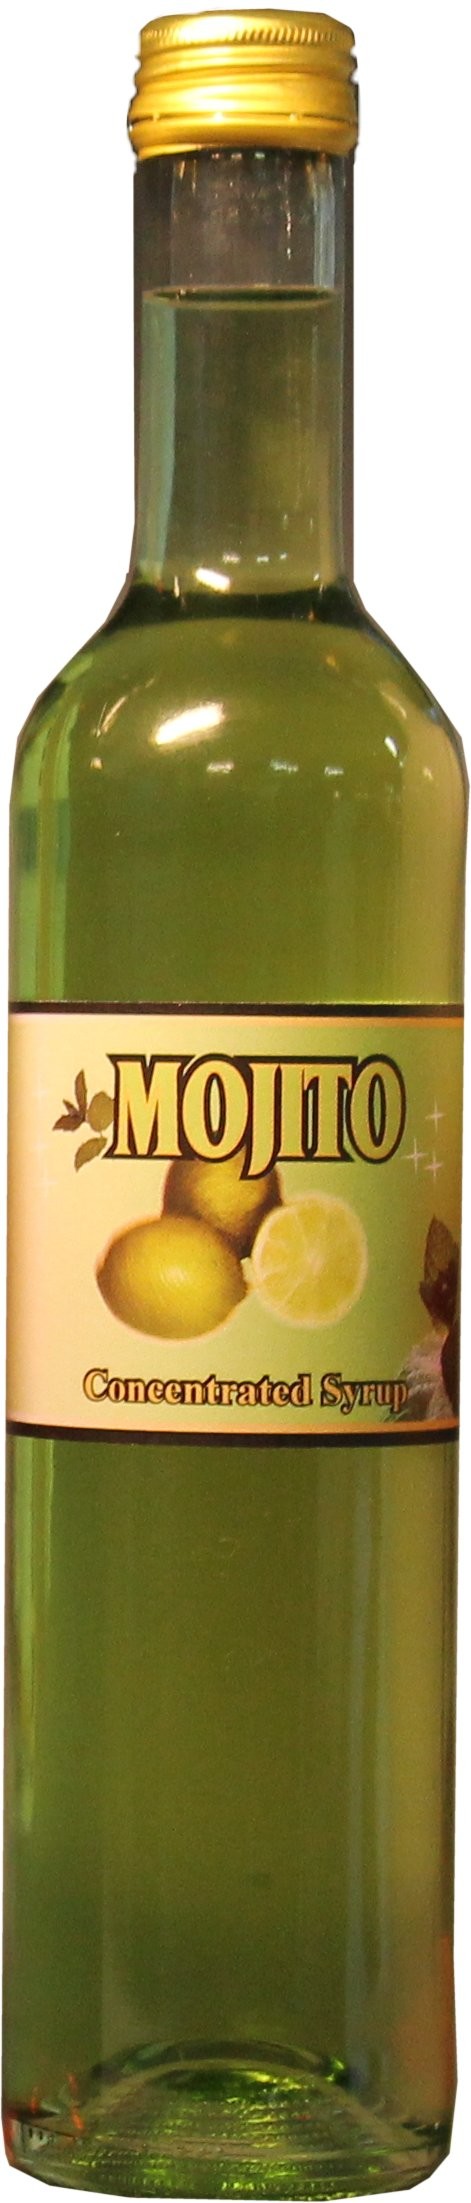 Mojito syrup (sirap) fungerar perfekt för att ge dina drinkar en god mojitosmak av lime och mynta.